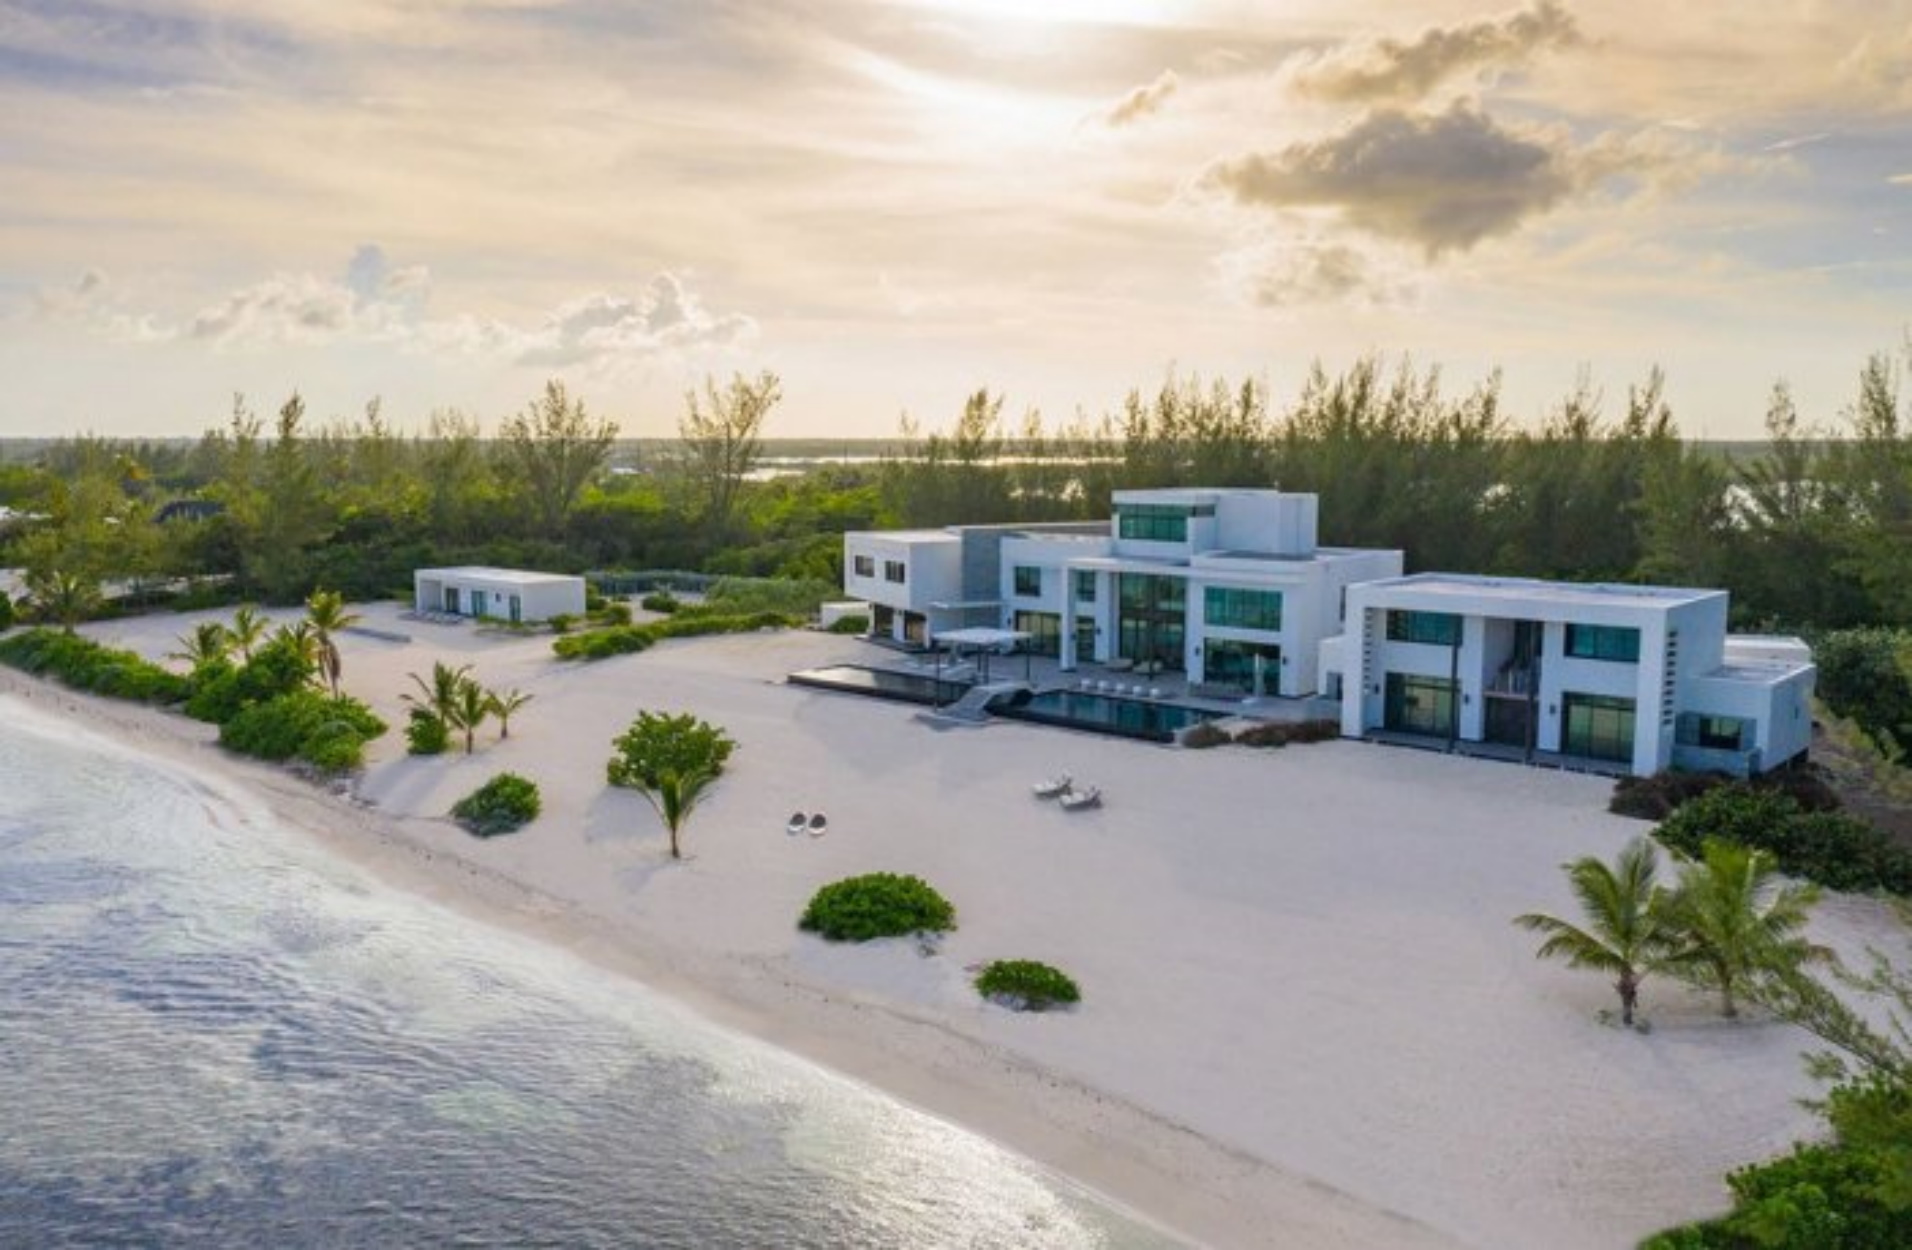 Ένα πανέμορφο σπίτι αξίας 29 εκατ. δολαρίων στον “φορολογικό” παράδεισο της Καραϊβικής